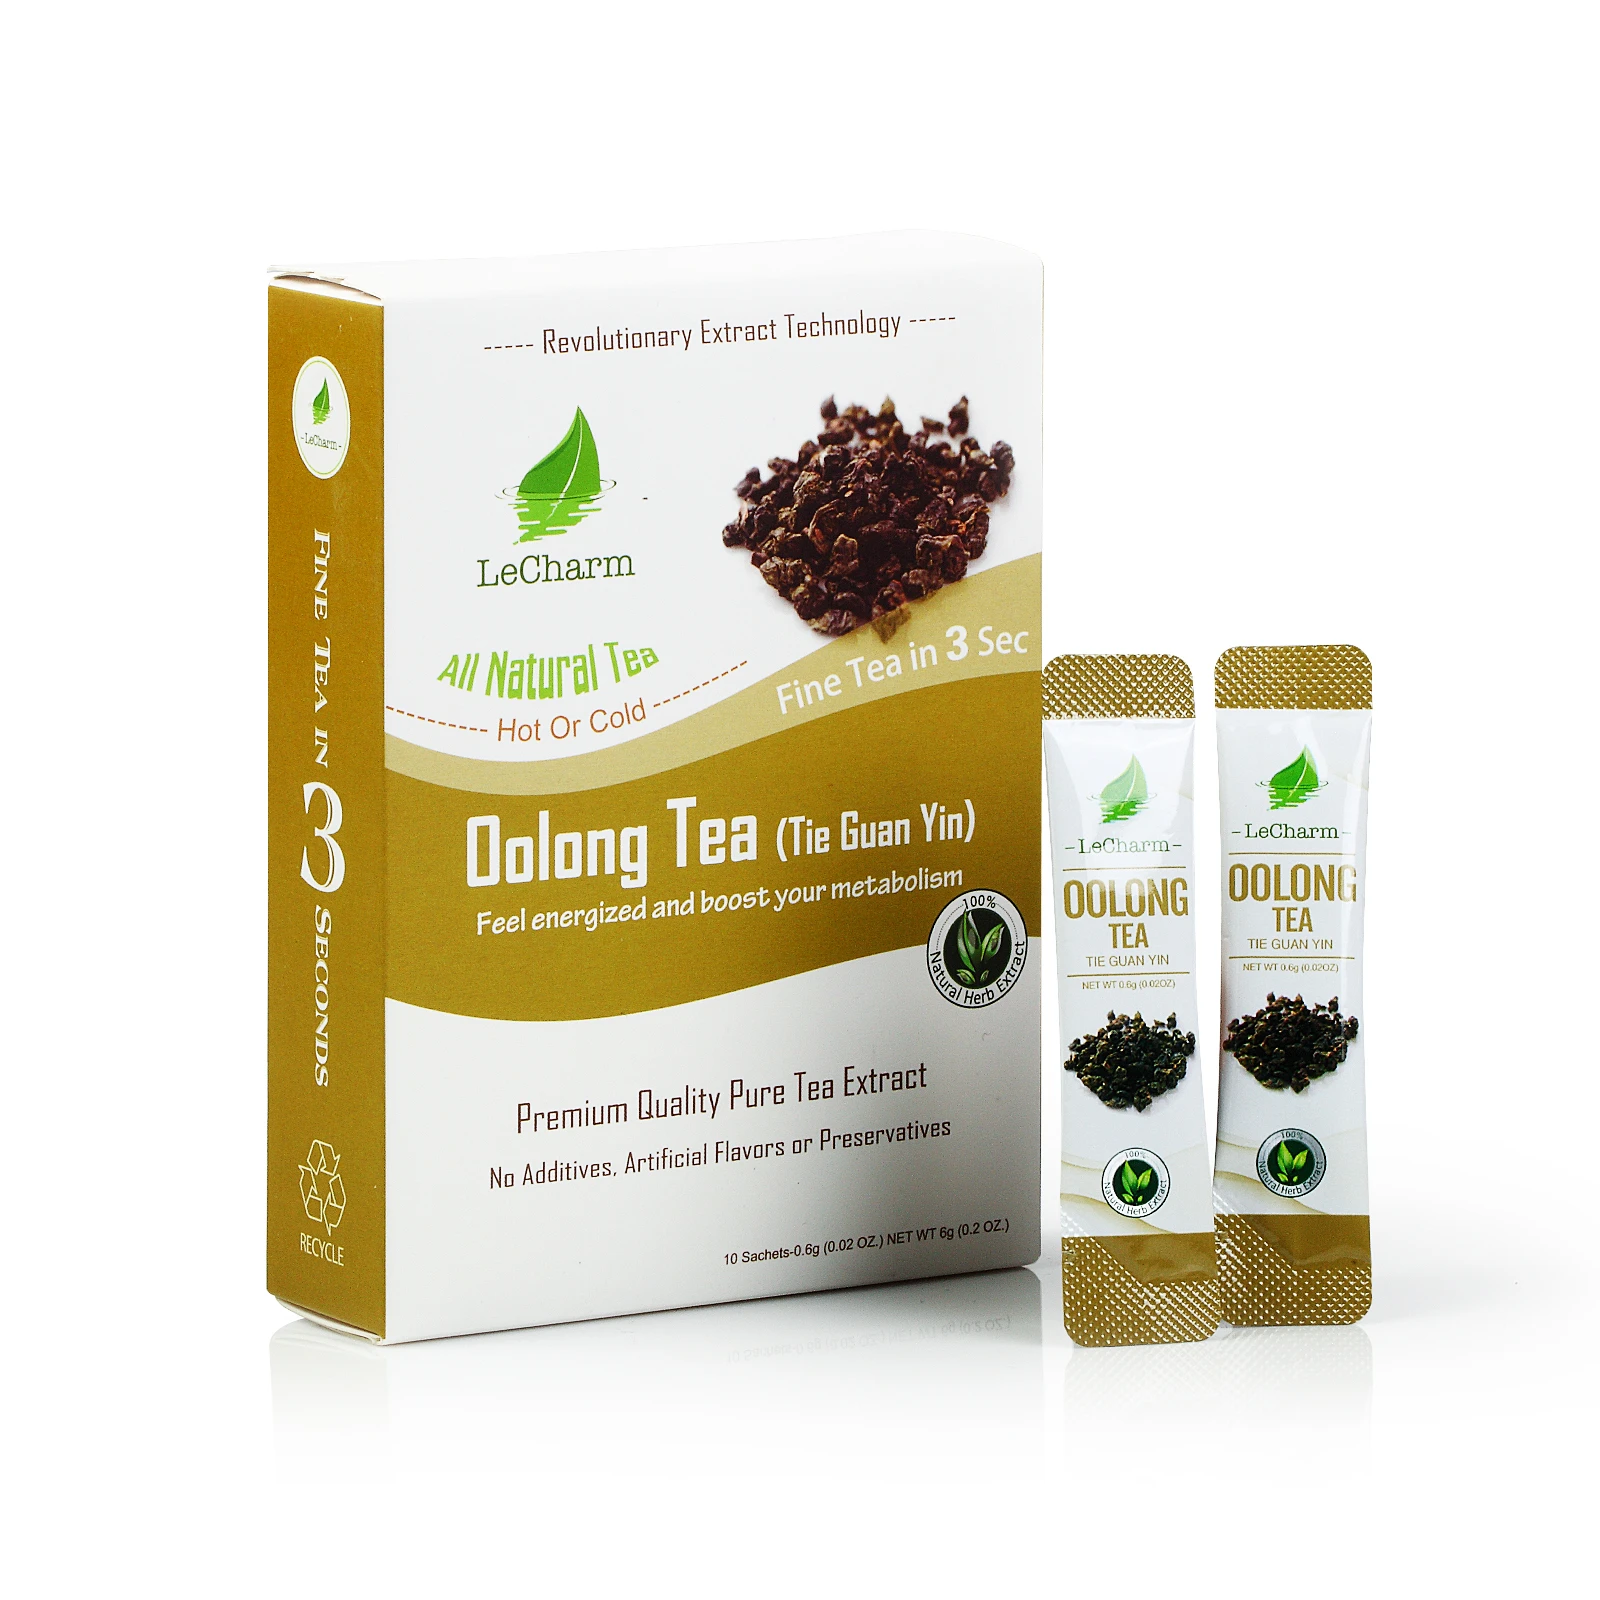 Taiwan Oolong Tea Extract Powder Oolong Tea Bags Organic Oolong Tea 10 Sachets/ Box